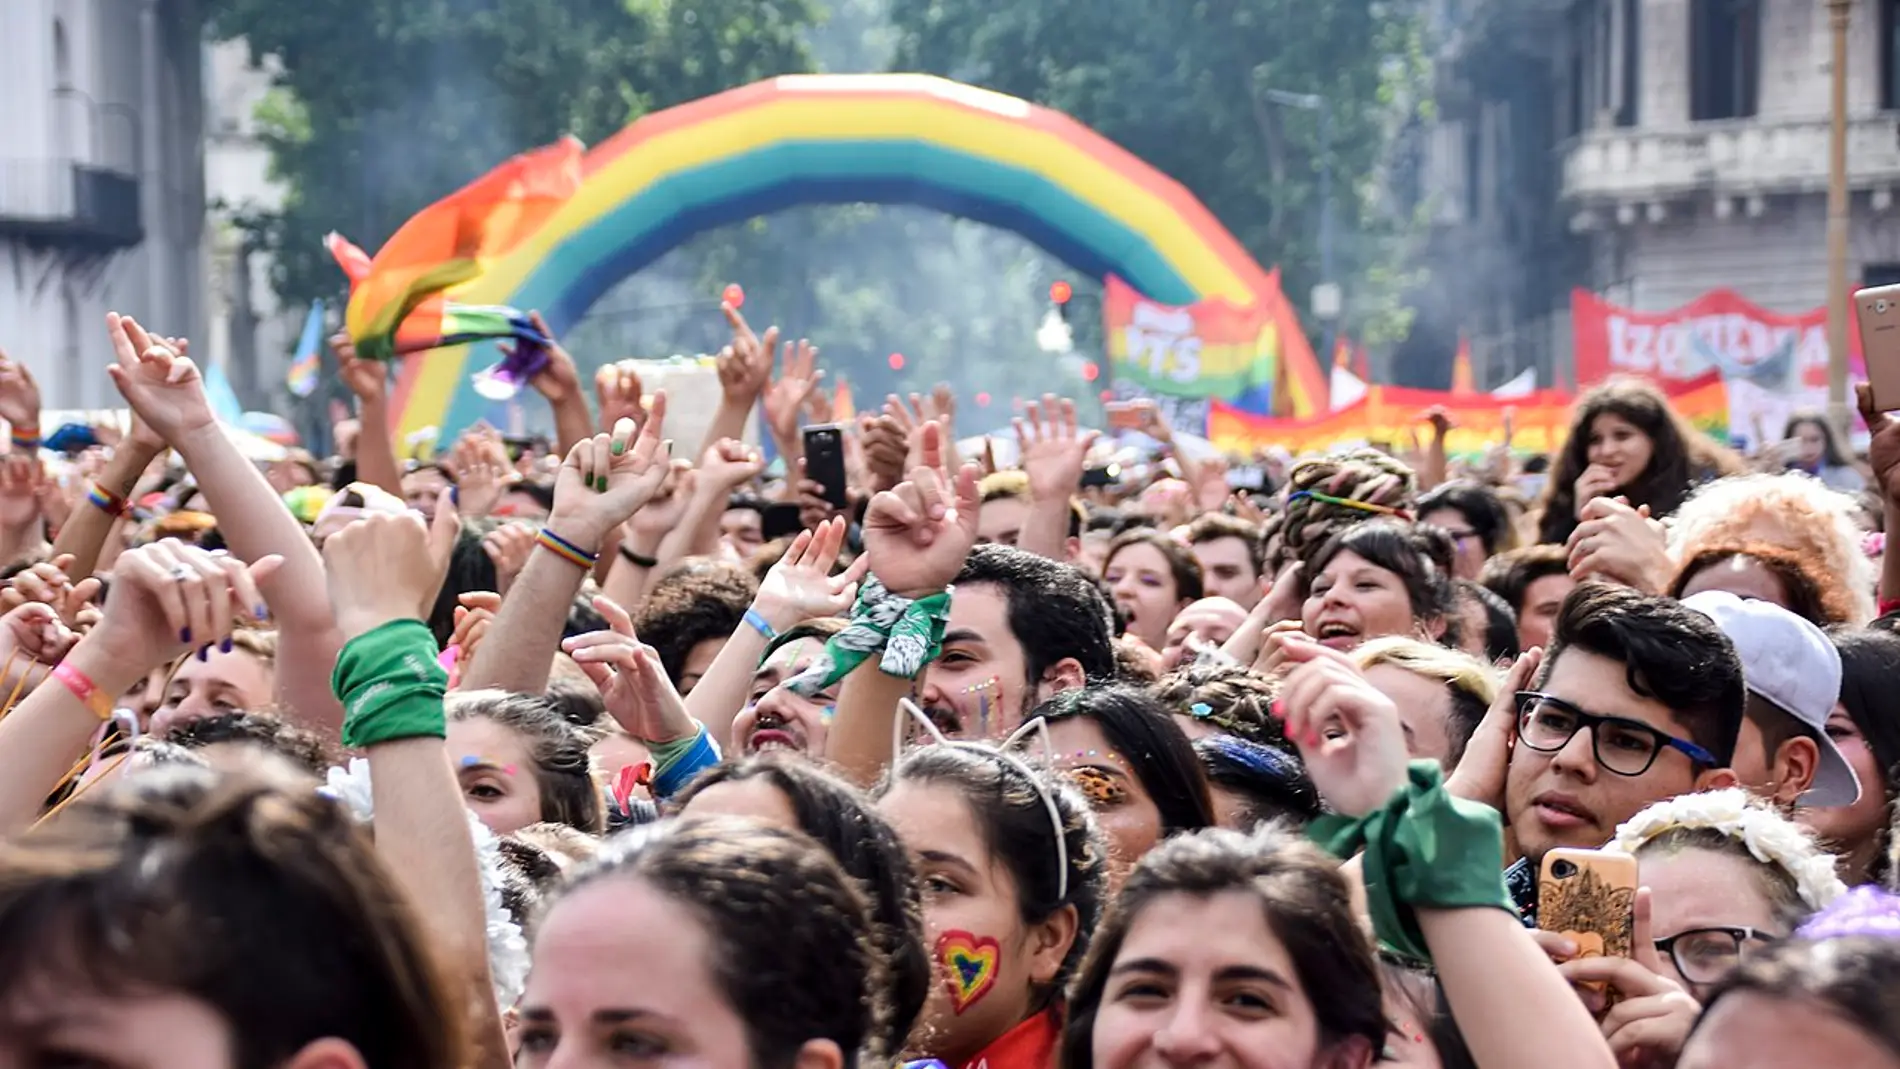 Orgullo LGBTIQ+: curiosidades del Día del Orgullo que quizás no sabías